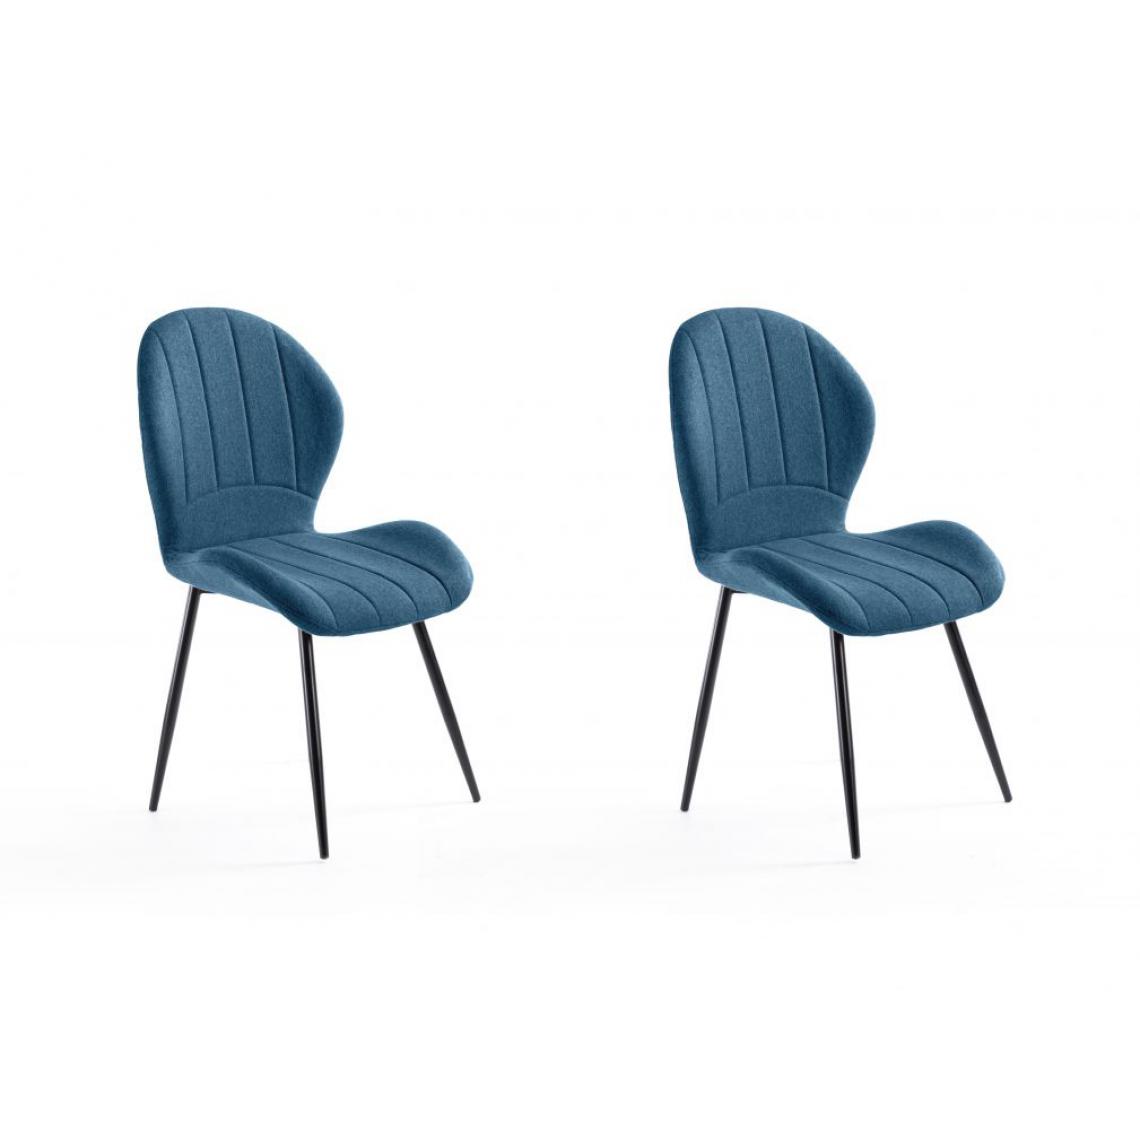 Usinestreet - Lot de 2 chaises design JOYA en tissu et pieds en métal noir - Bleu pétrole - Chaises